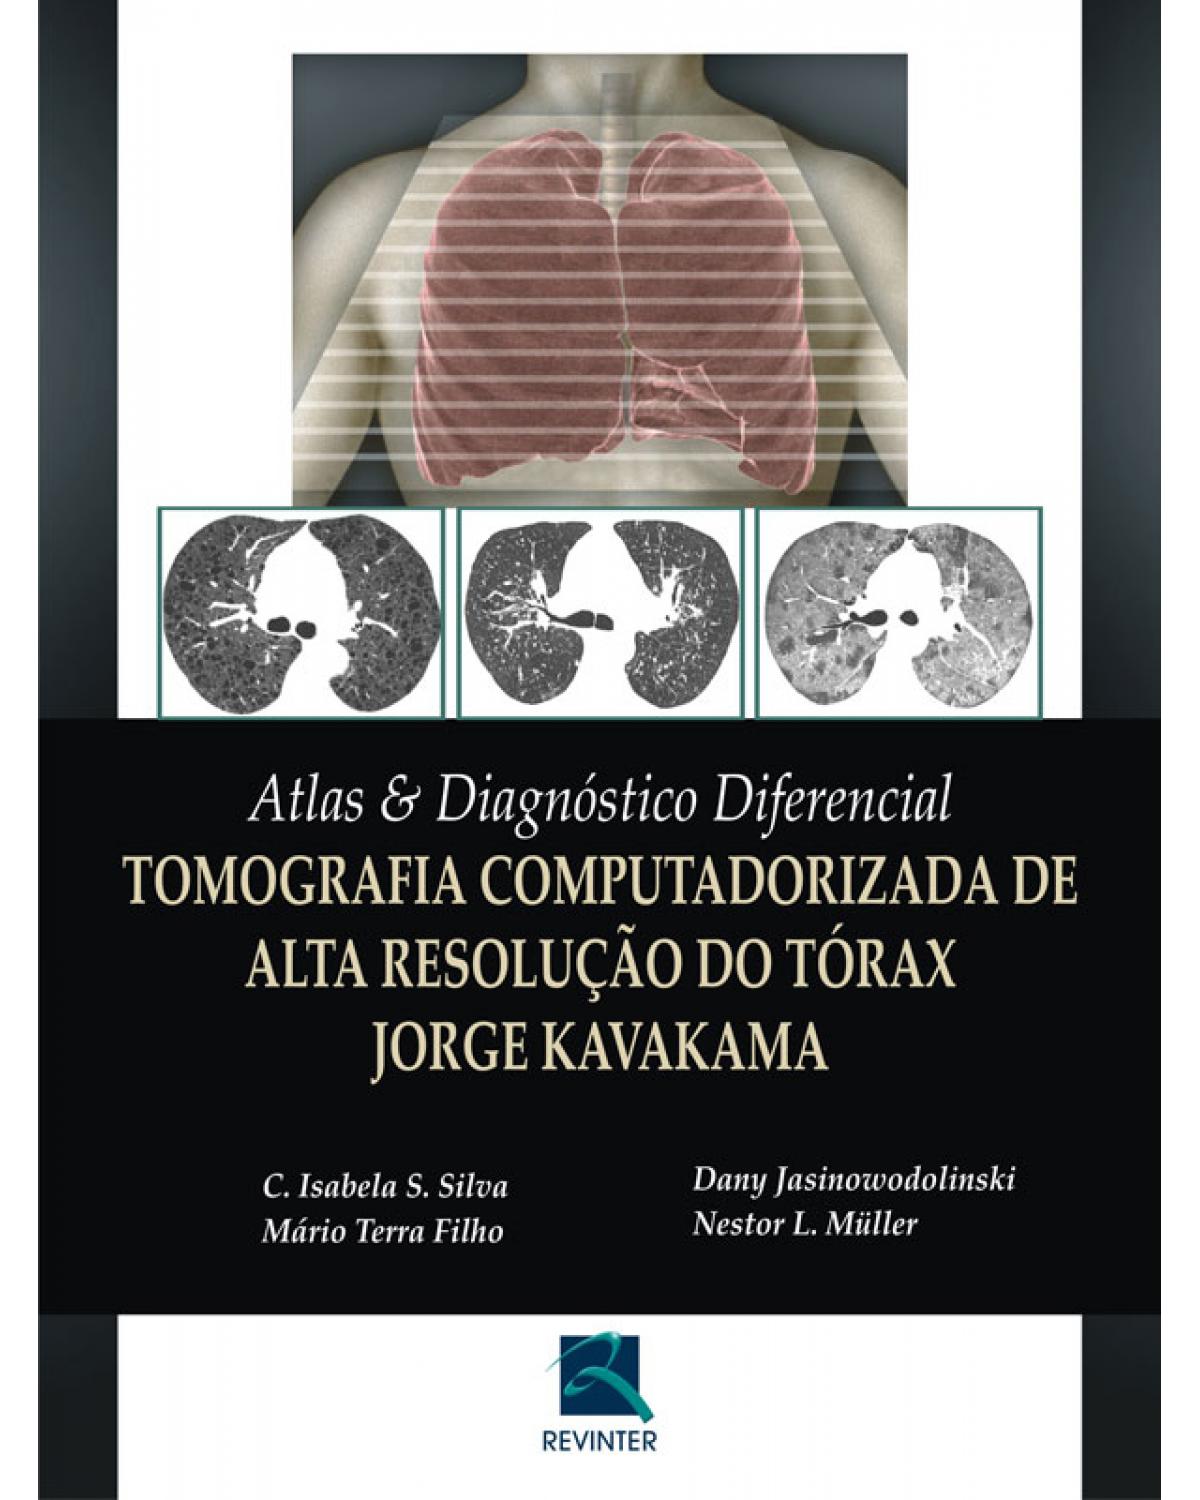 Atlas e diagnóstico diferencial - tomografia computadorizada de alta resolução do tórax - Jorge Kavakama - 1ª Edição | 2008